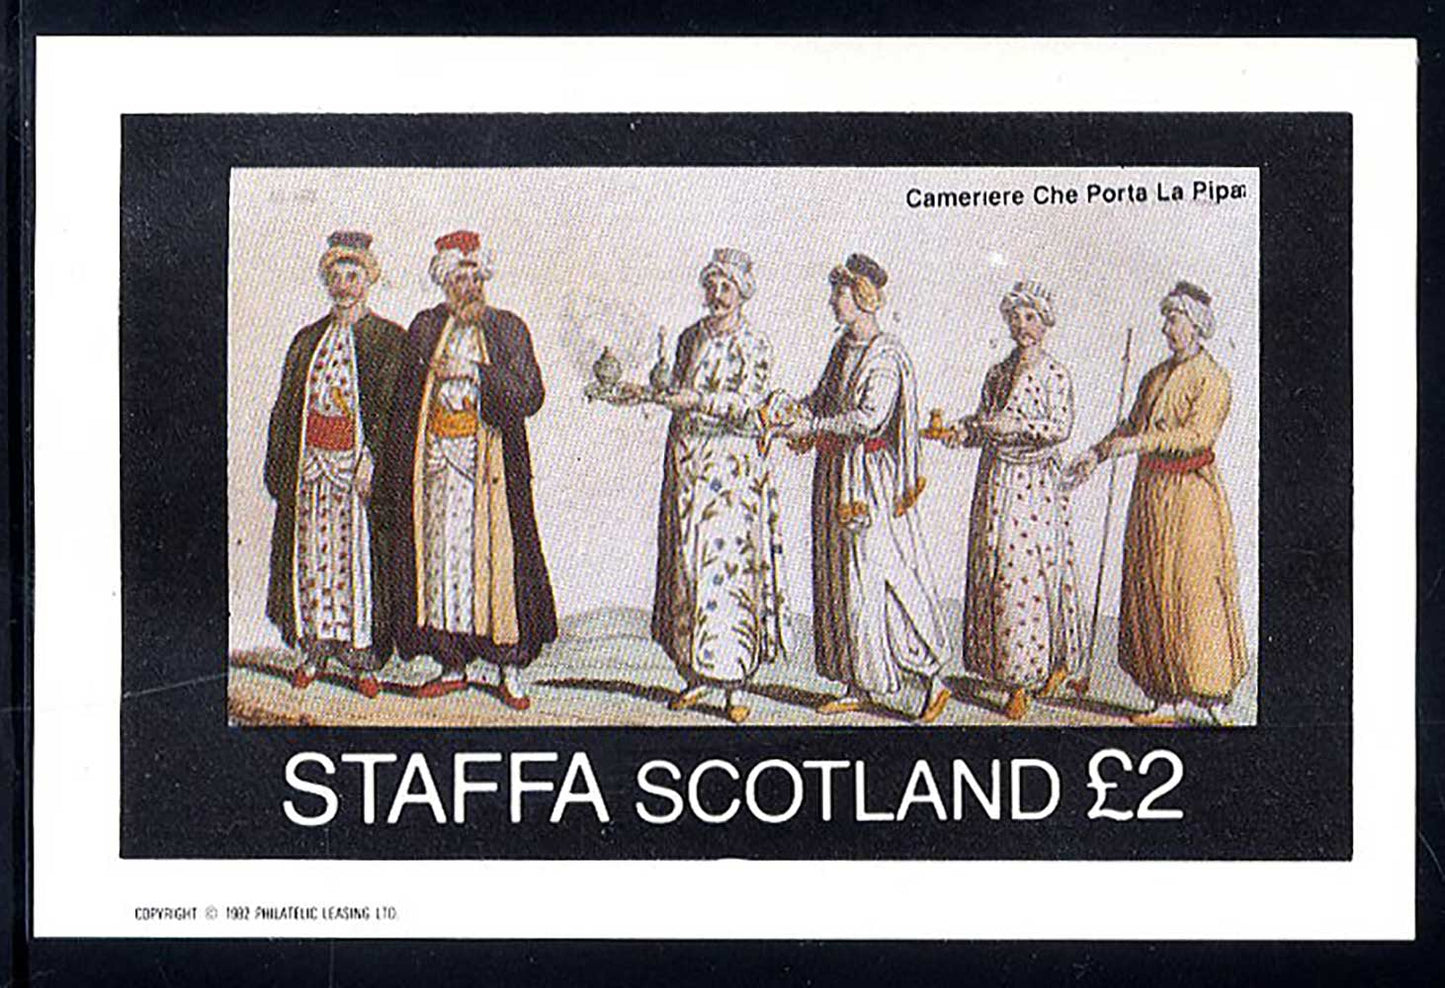 Staffa Mixed Italian Costumes £2